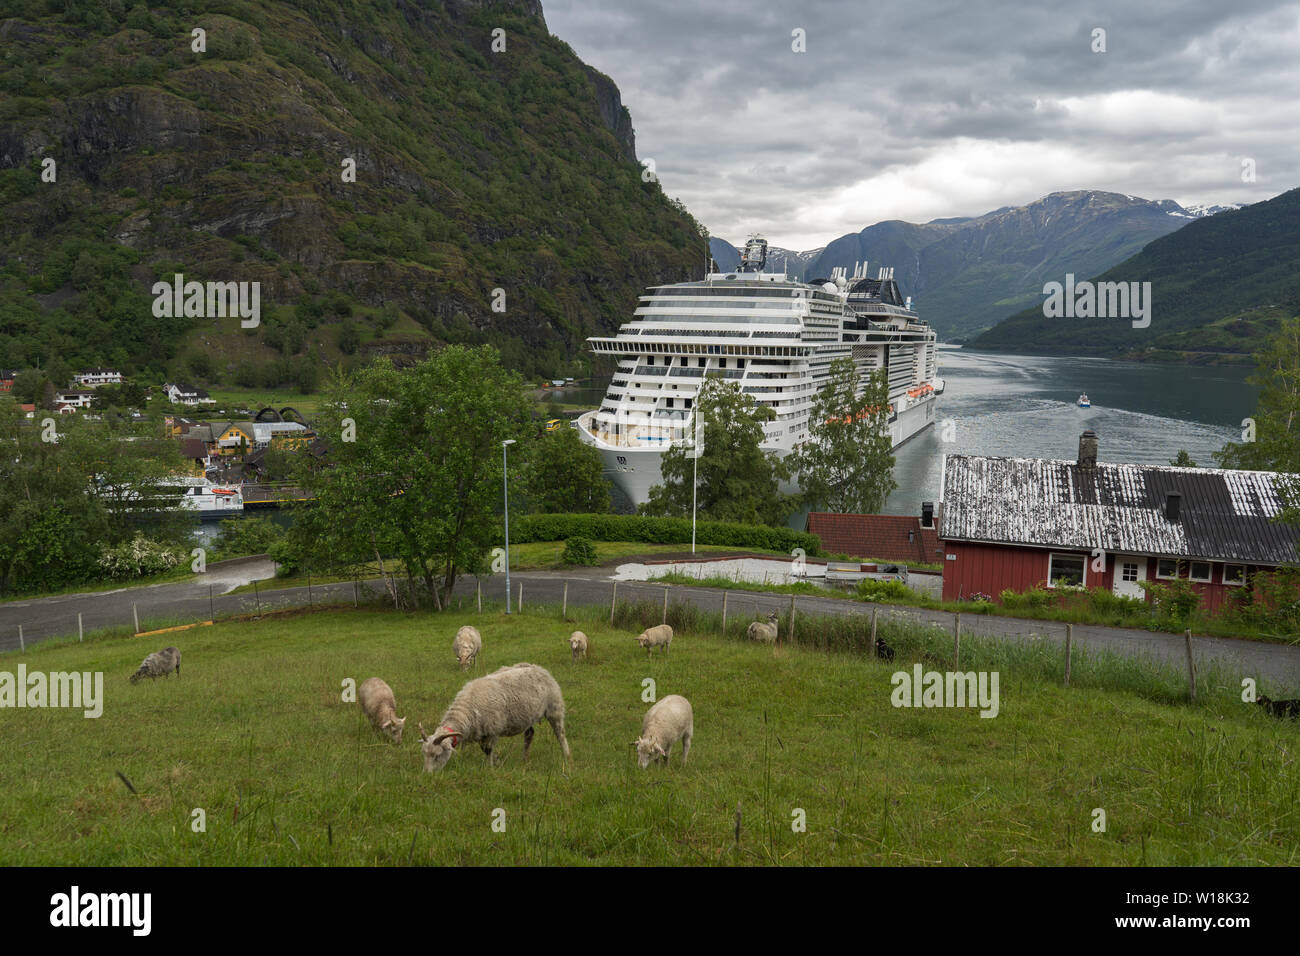 Flåm oder Flam, Dorf in Aurland Reiseziel in Norwegen, von der UNESCO geschützten Bereich. Blick auf den Fjord und die Cruise Liner in Flam Hafen geparkt. Stockfoto